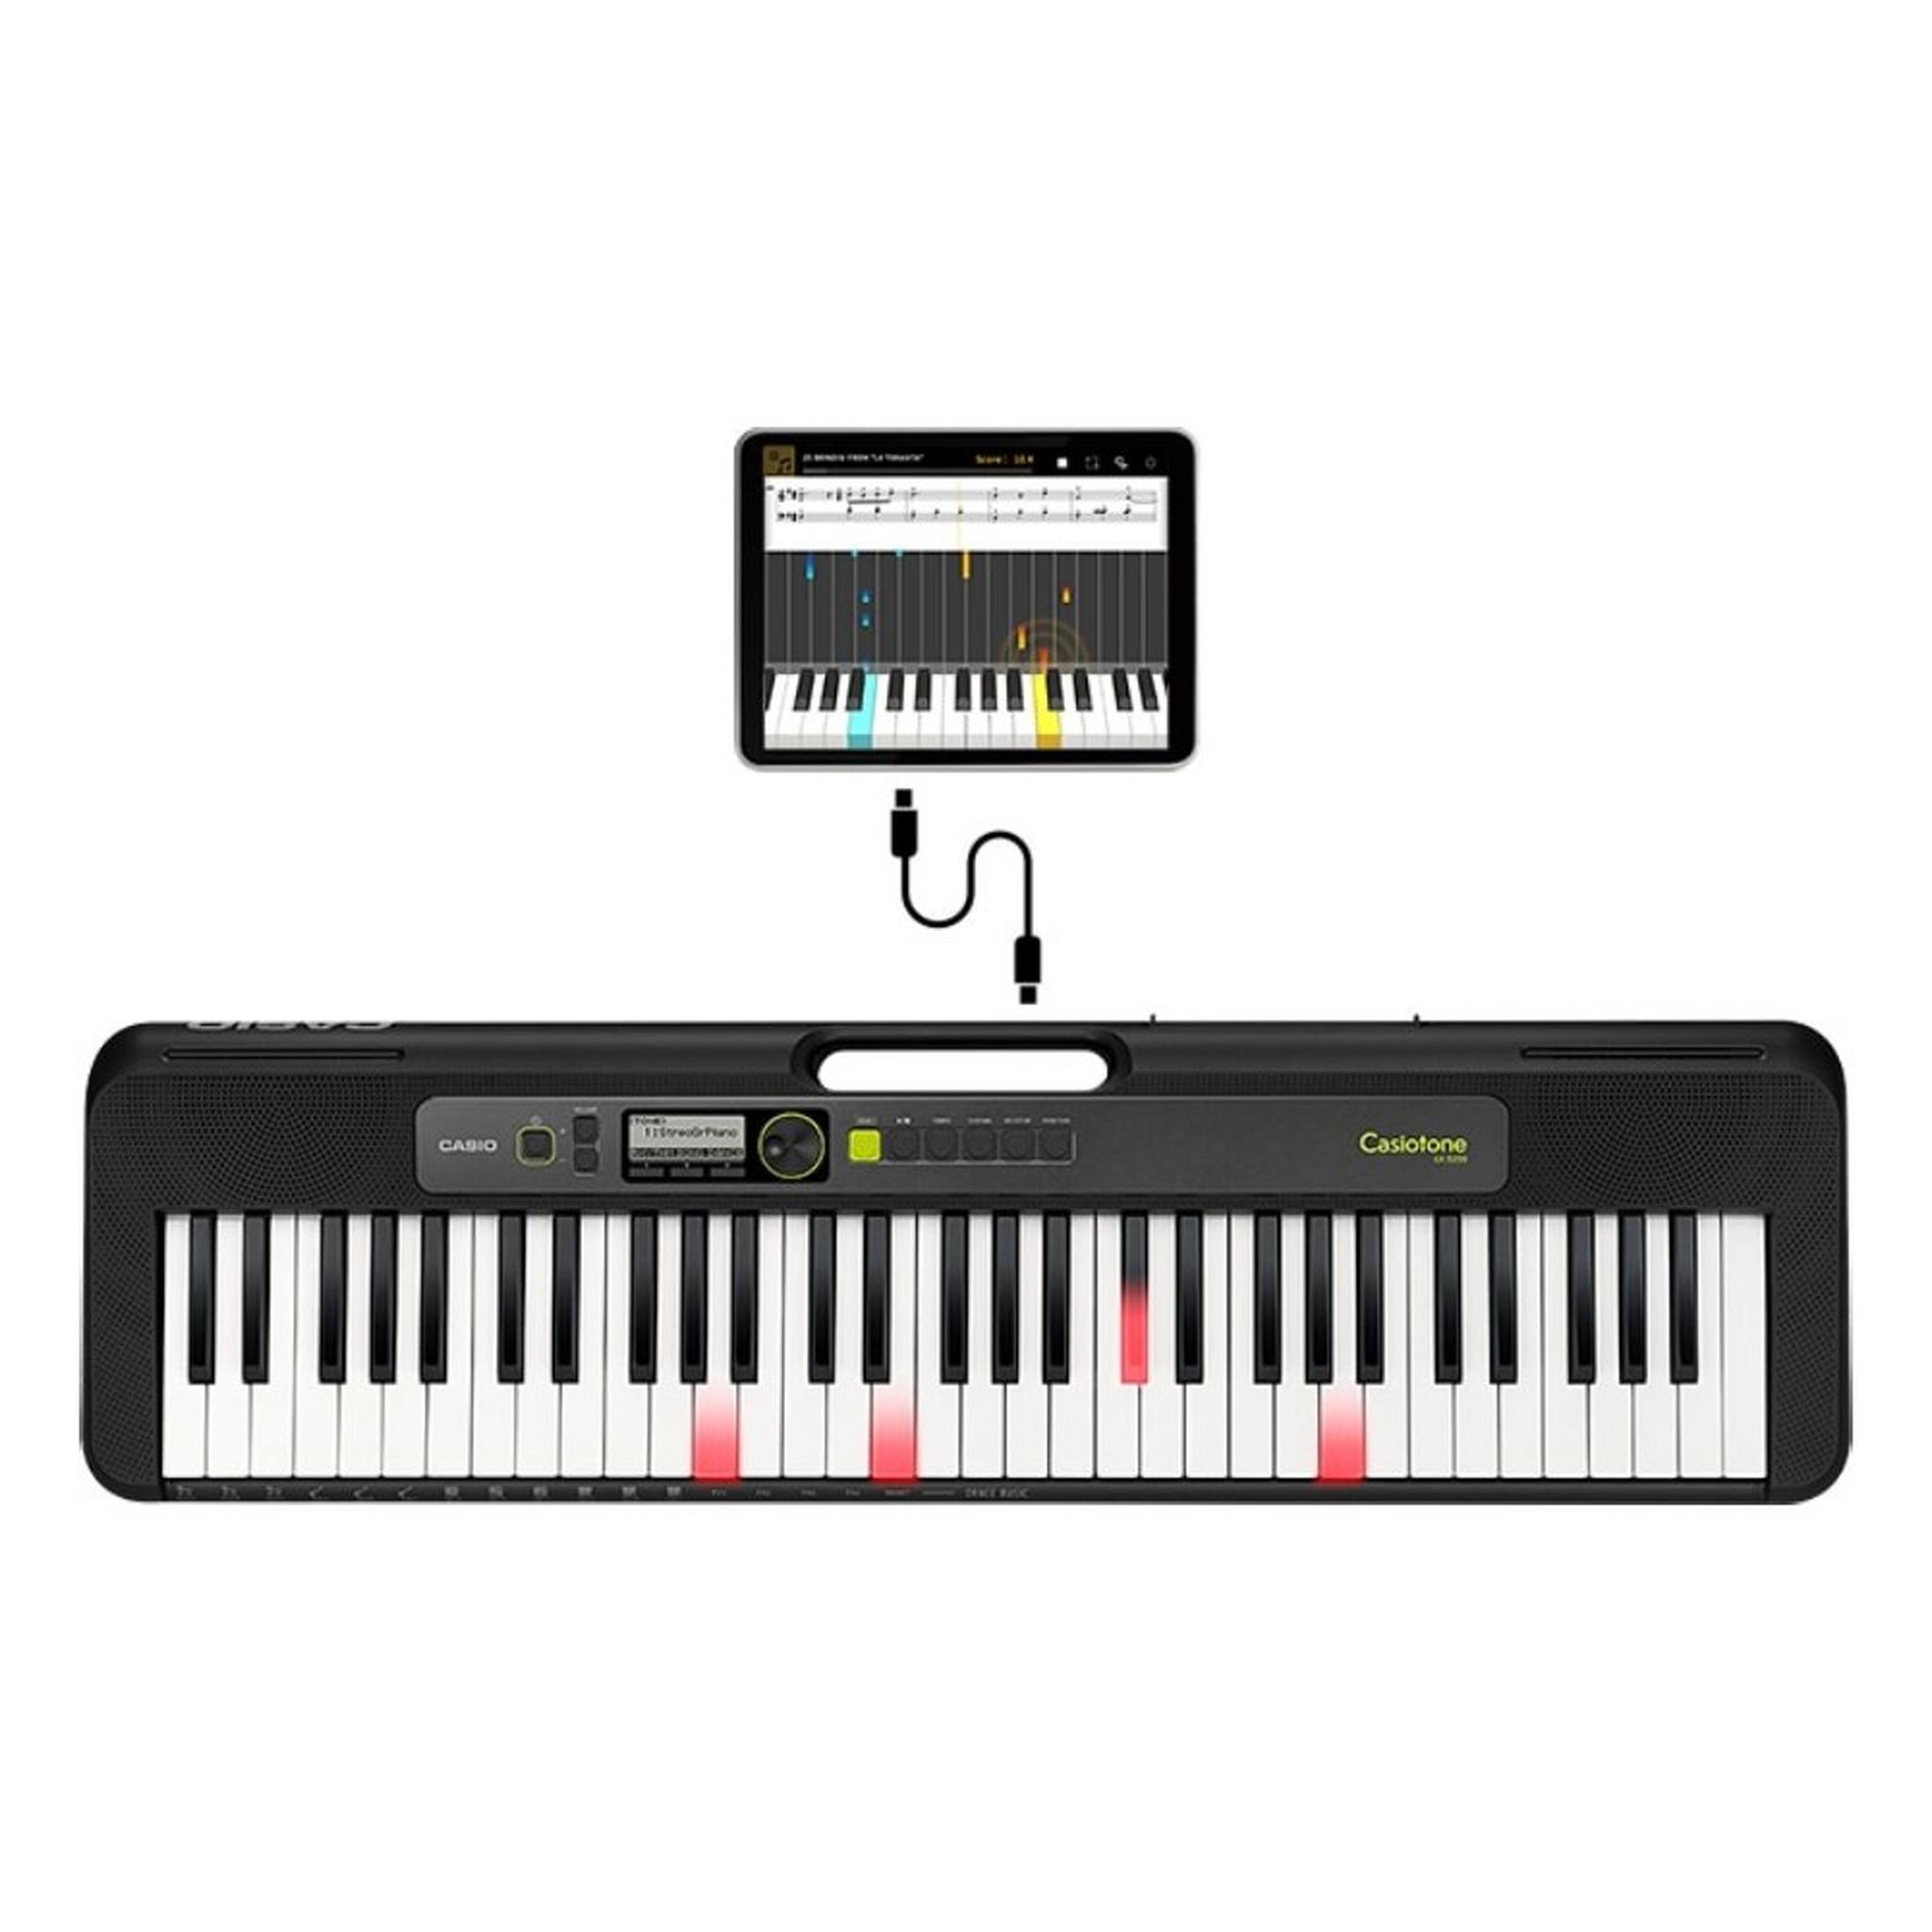 Casio Musical Keyboard 61 Keys (LK-250)